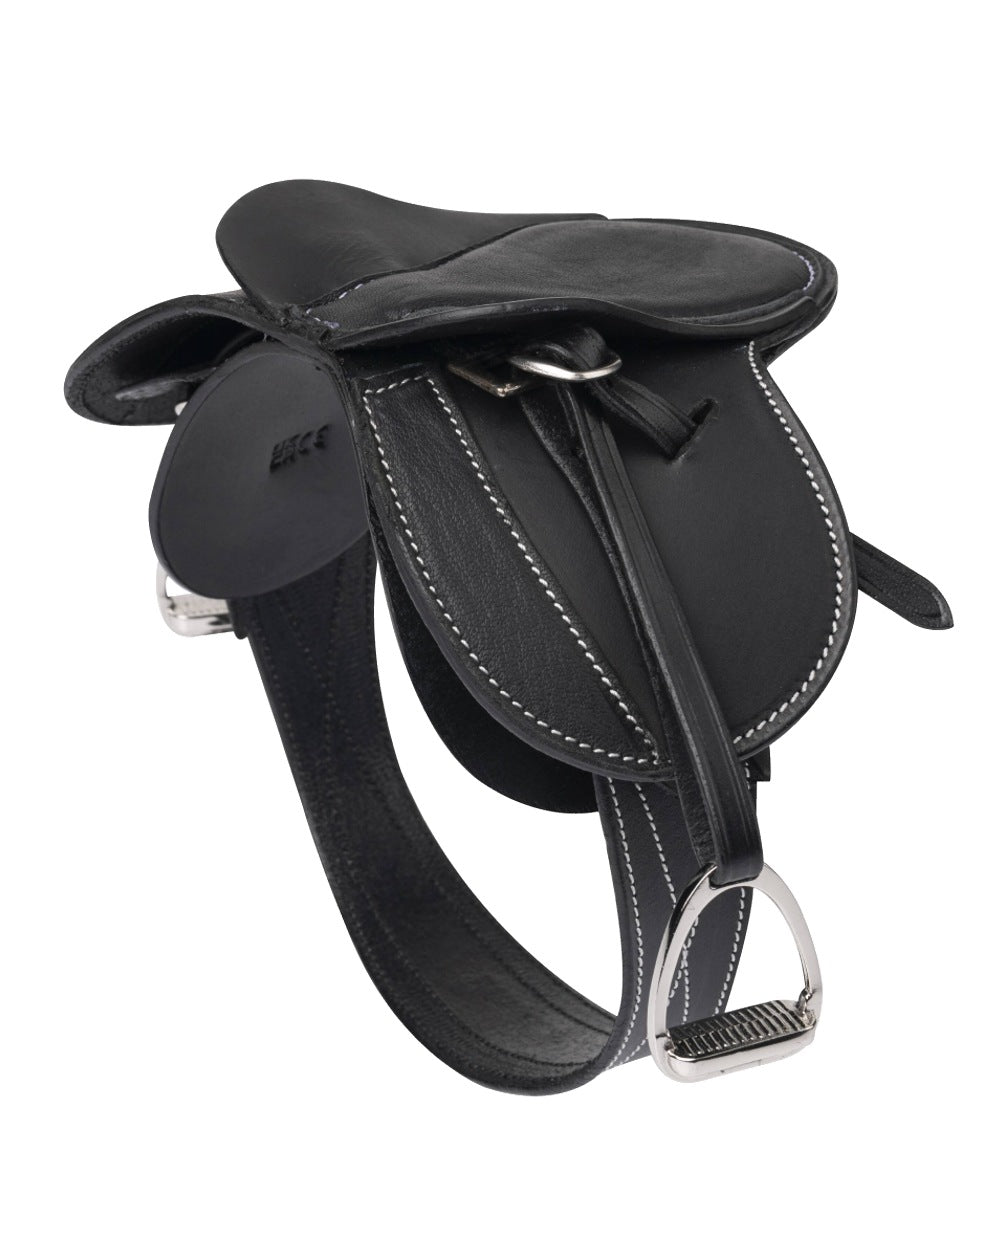 Black coloured LeMieux Toy Pony Saddle on white background 